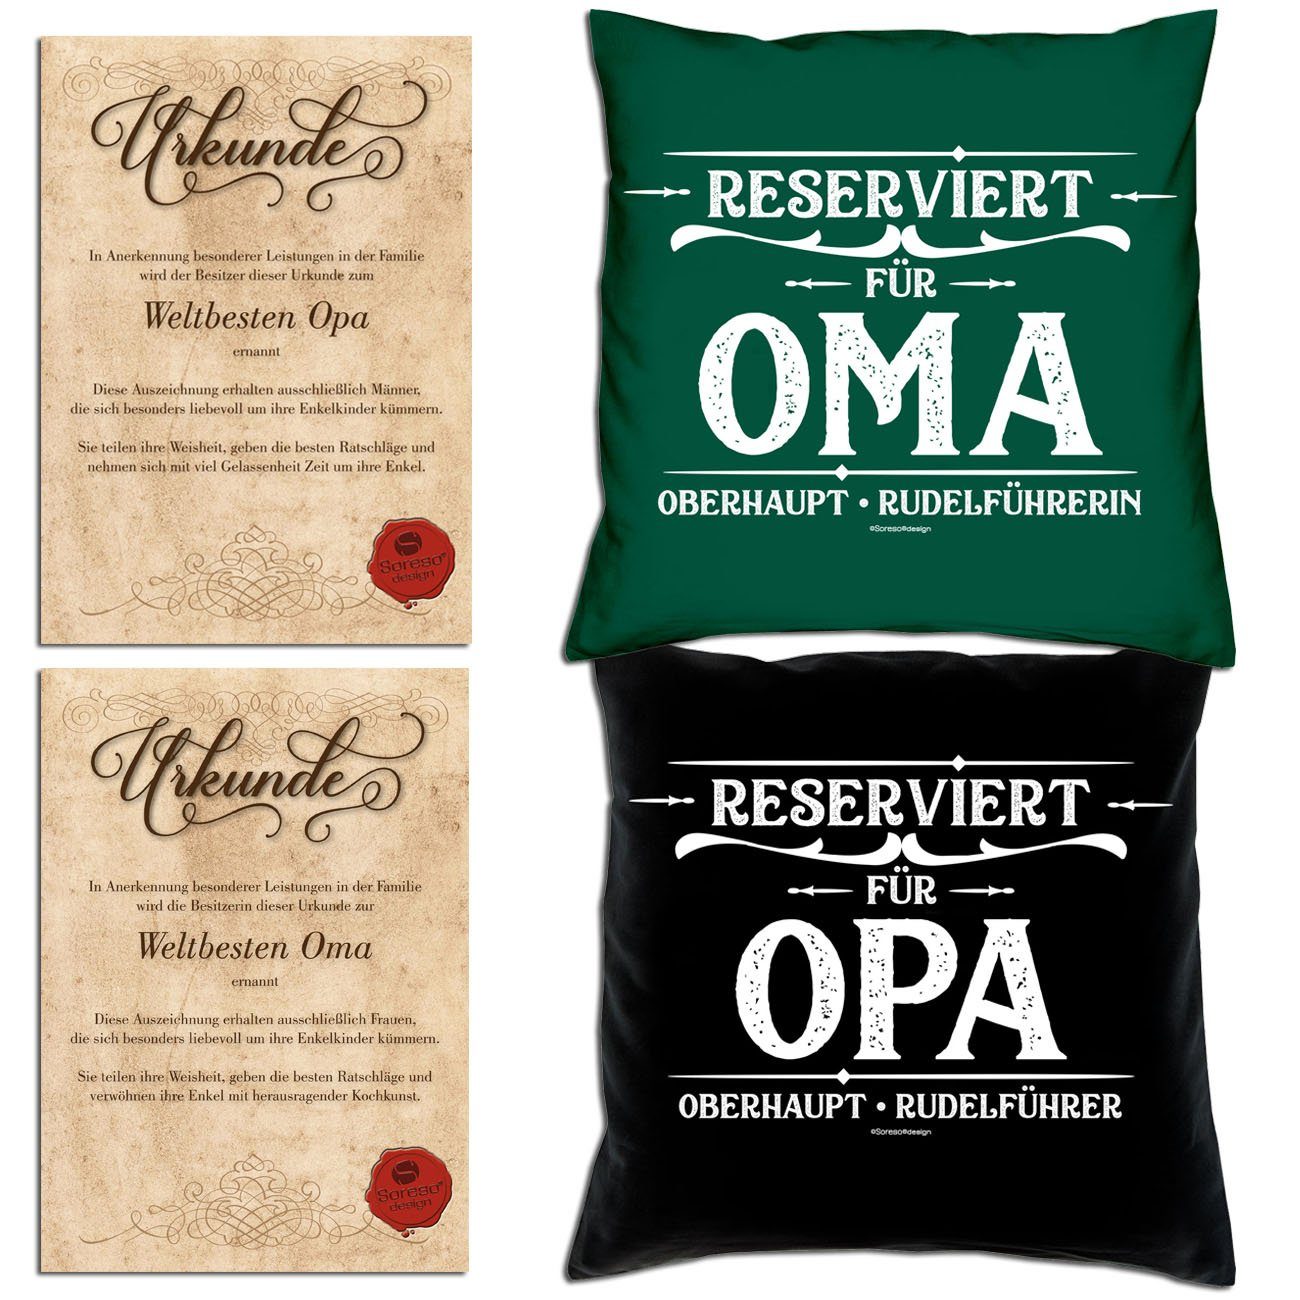 Soreso® Dekokissen Kissen-Set Reserviert für Opa Reserviert für Oma mit Urkunden, Geschenkidee Hochzeitstag Omatag Opatag dunkelgrün